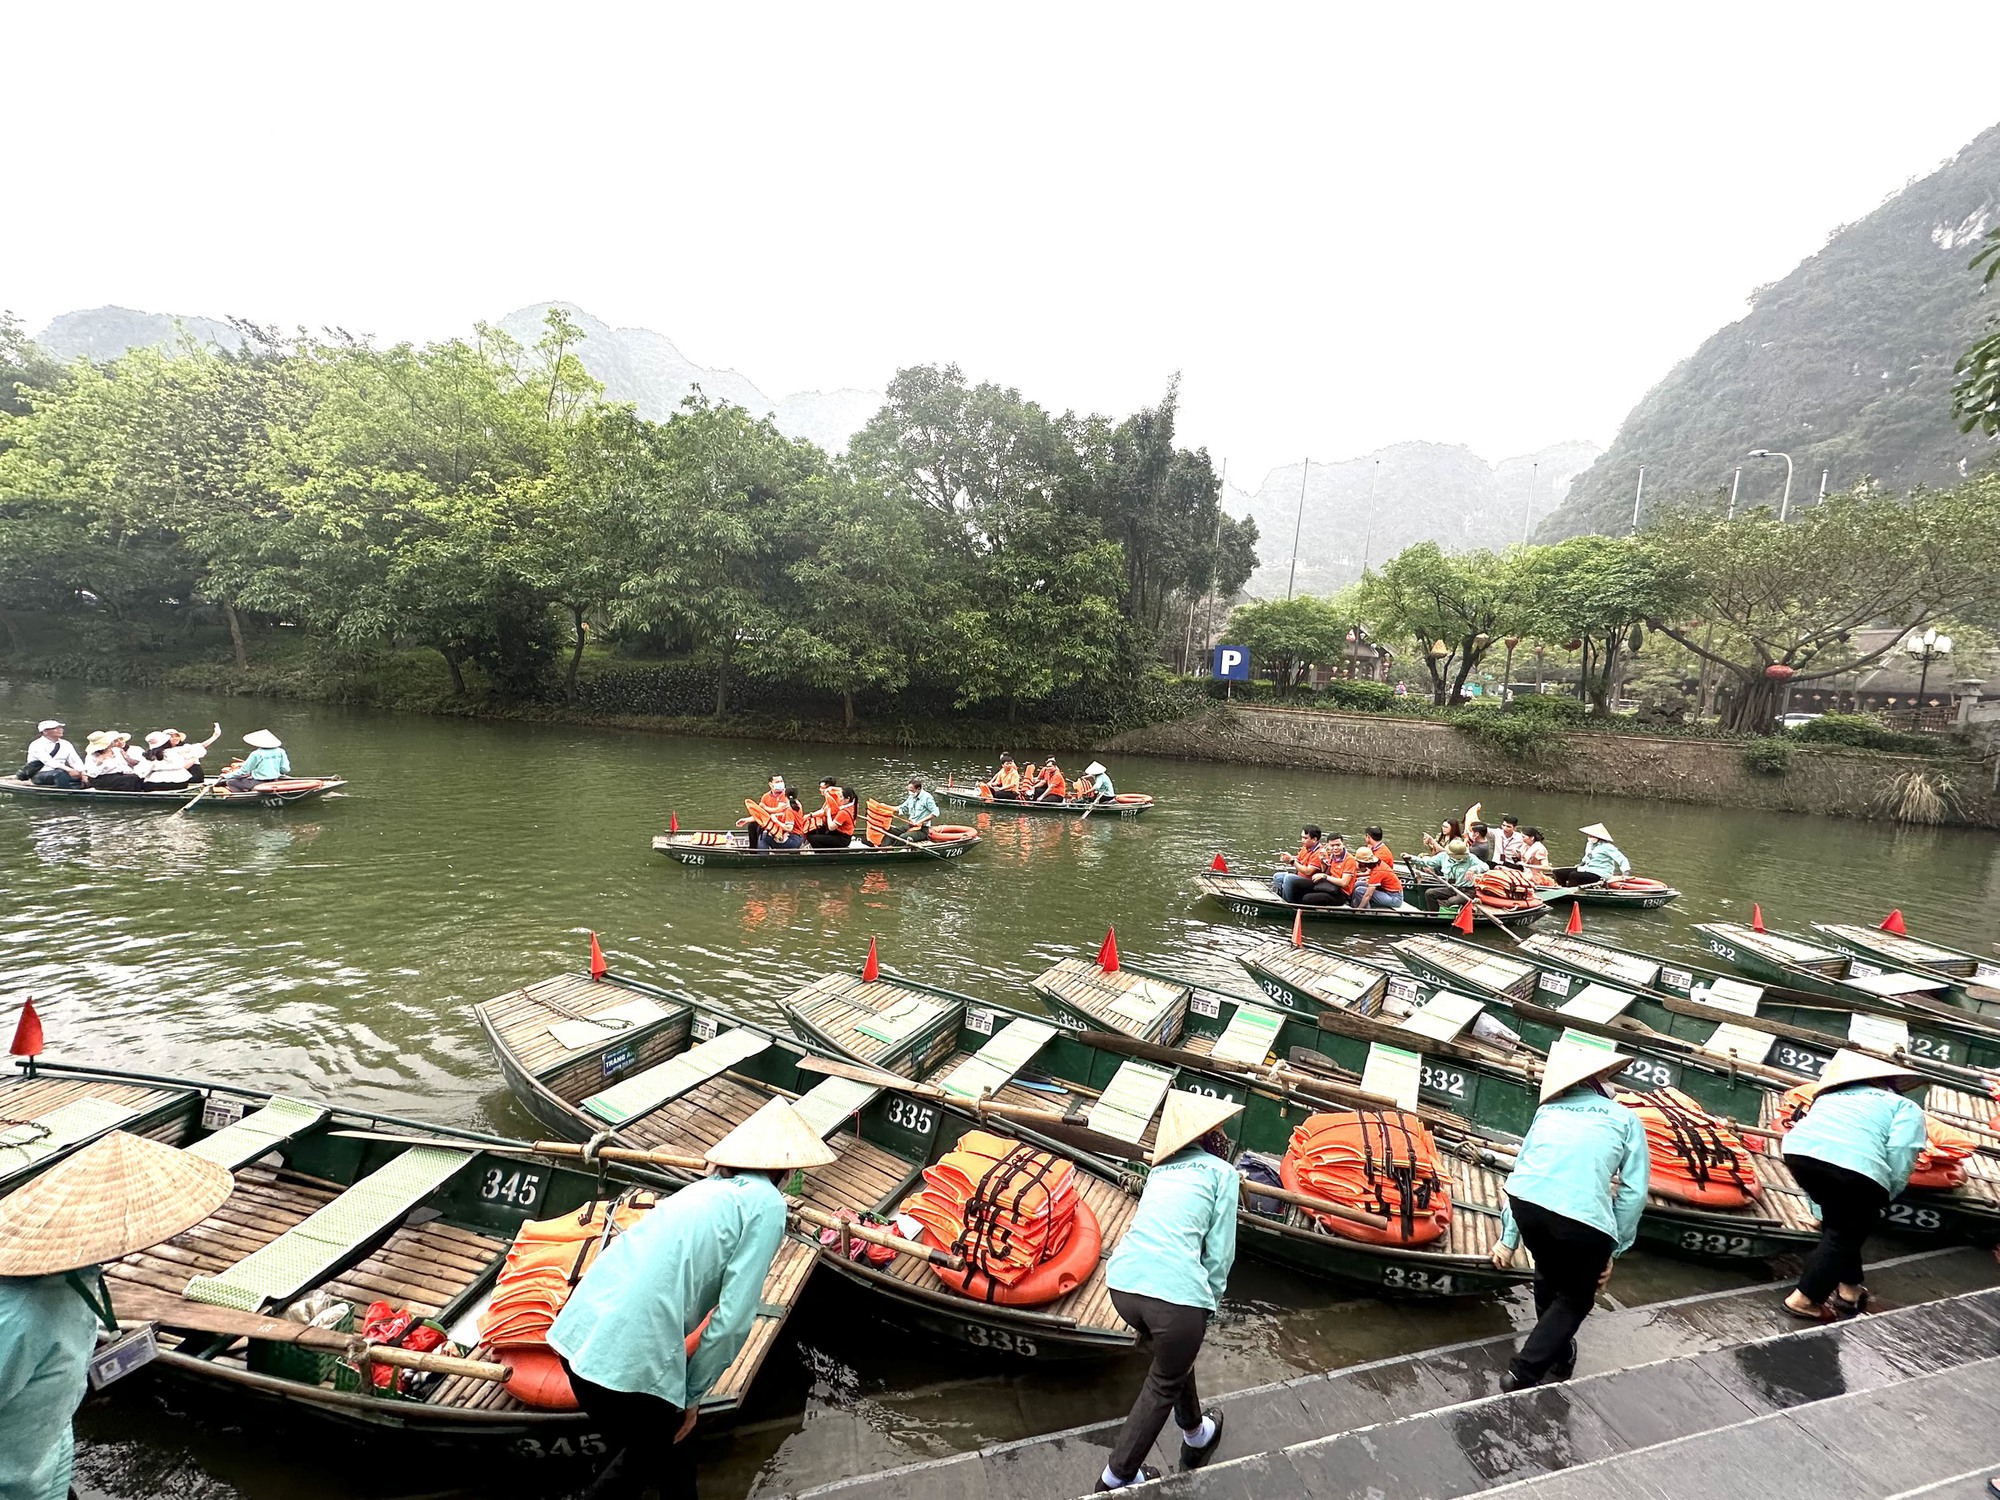 ‘Du lịch xanh’-Thế mạnh của Ninh Bình để trở thành điểm đến không thể bỏ qua